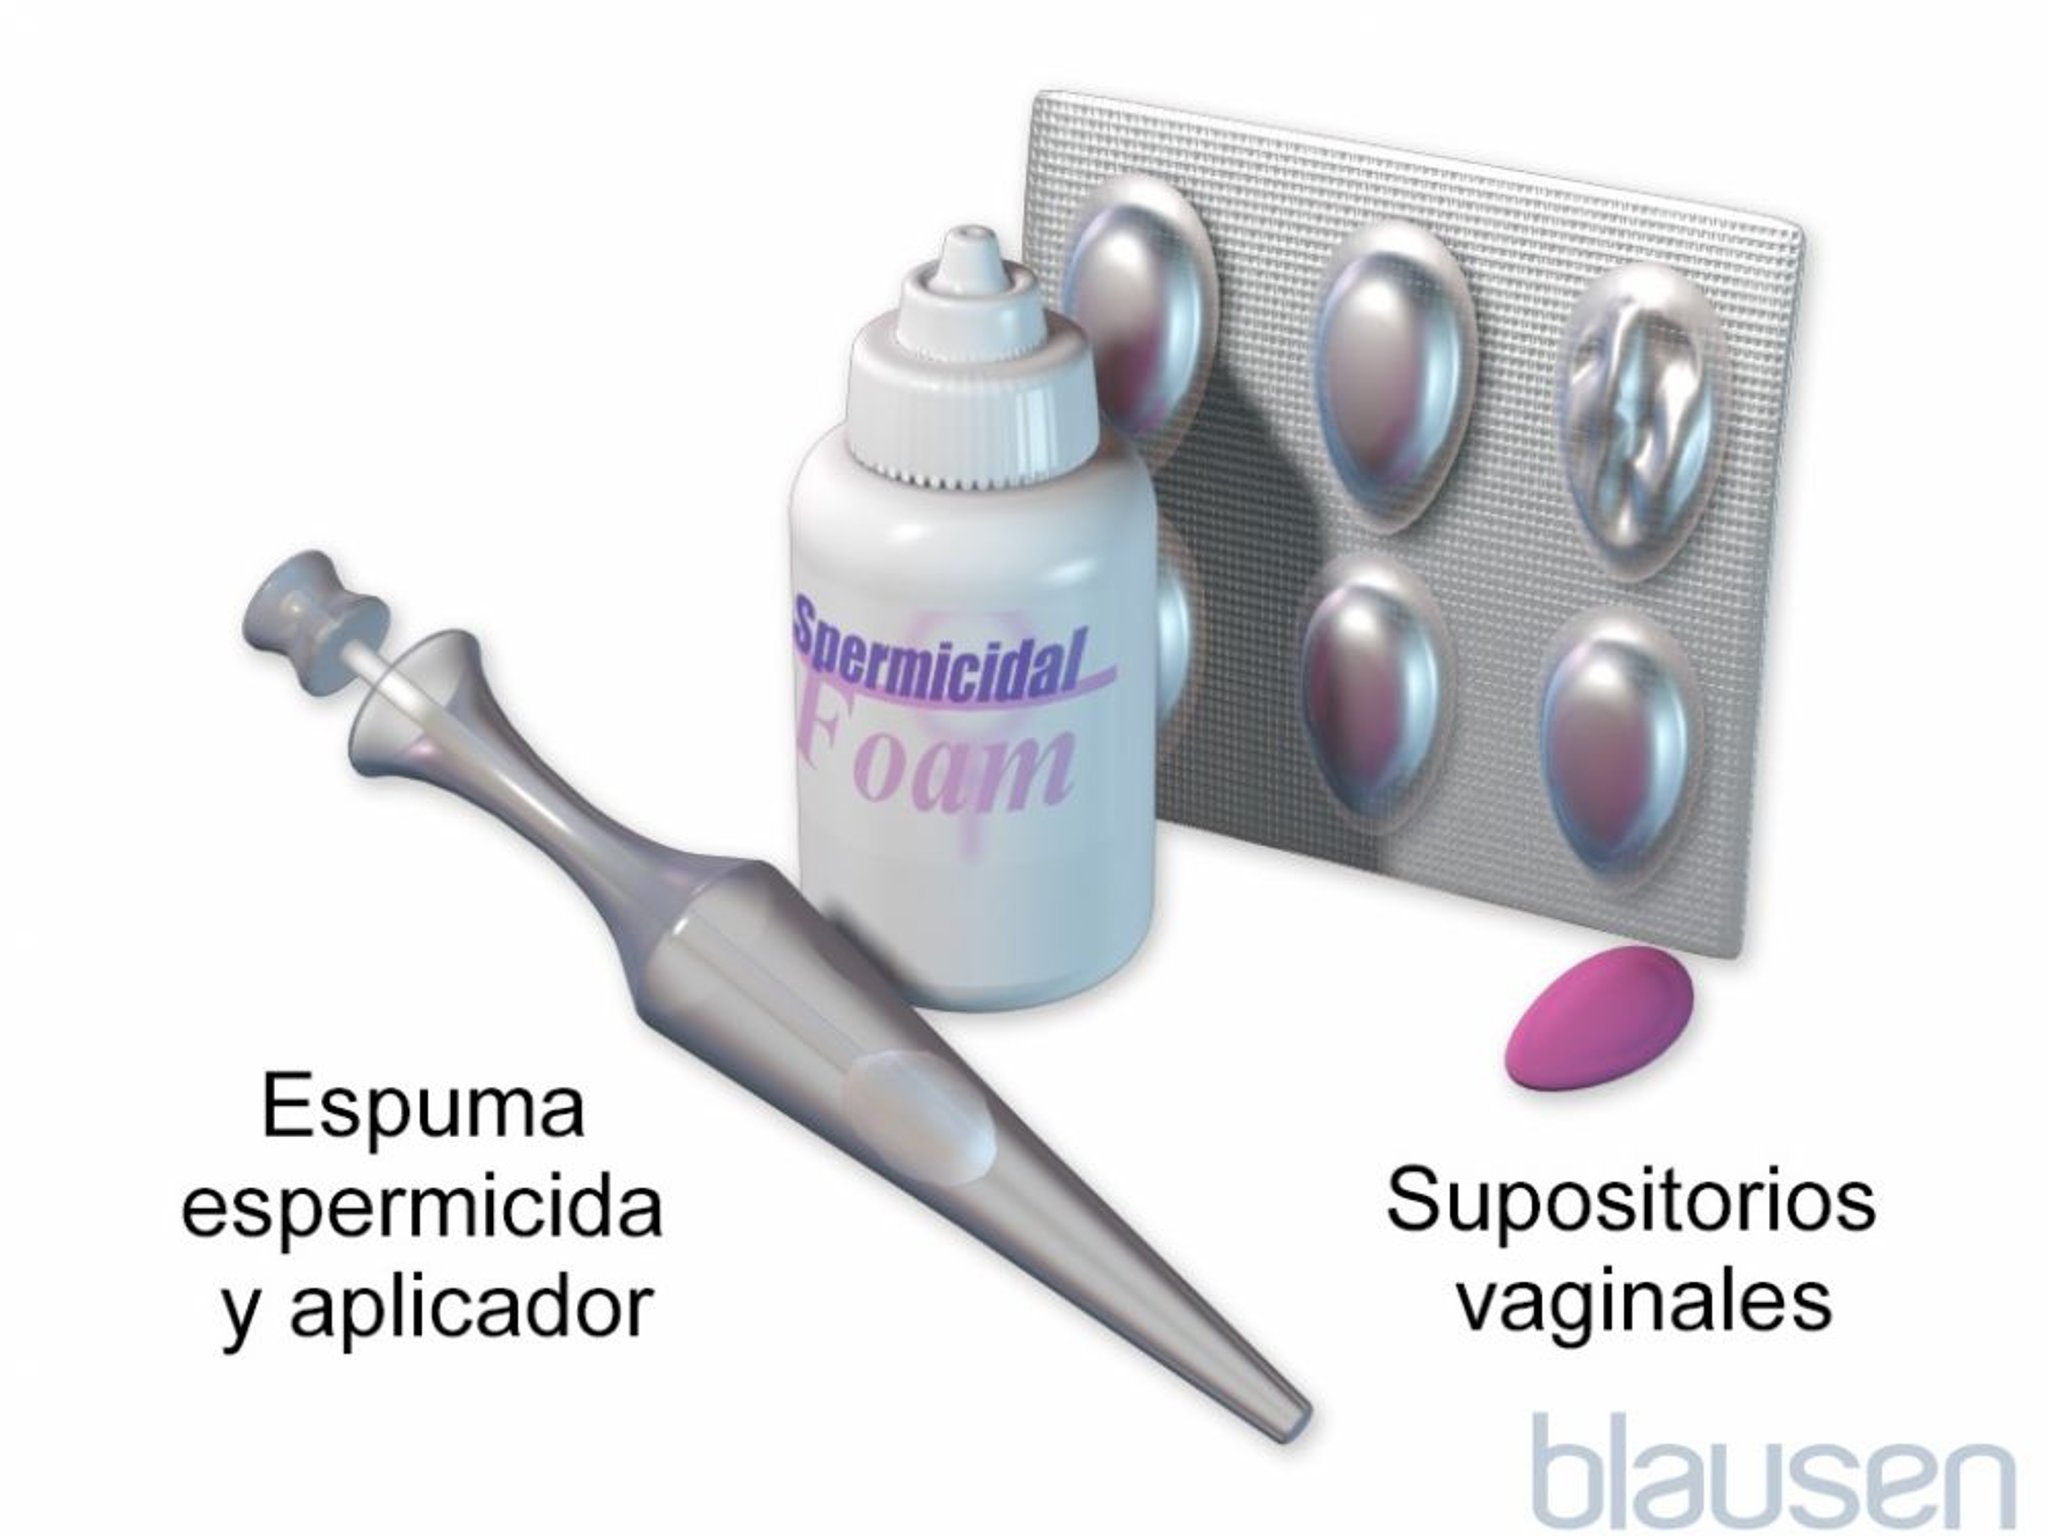 Espumas espermicidas y supositorios vaginales